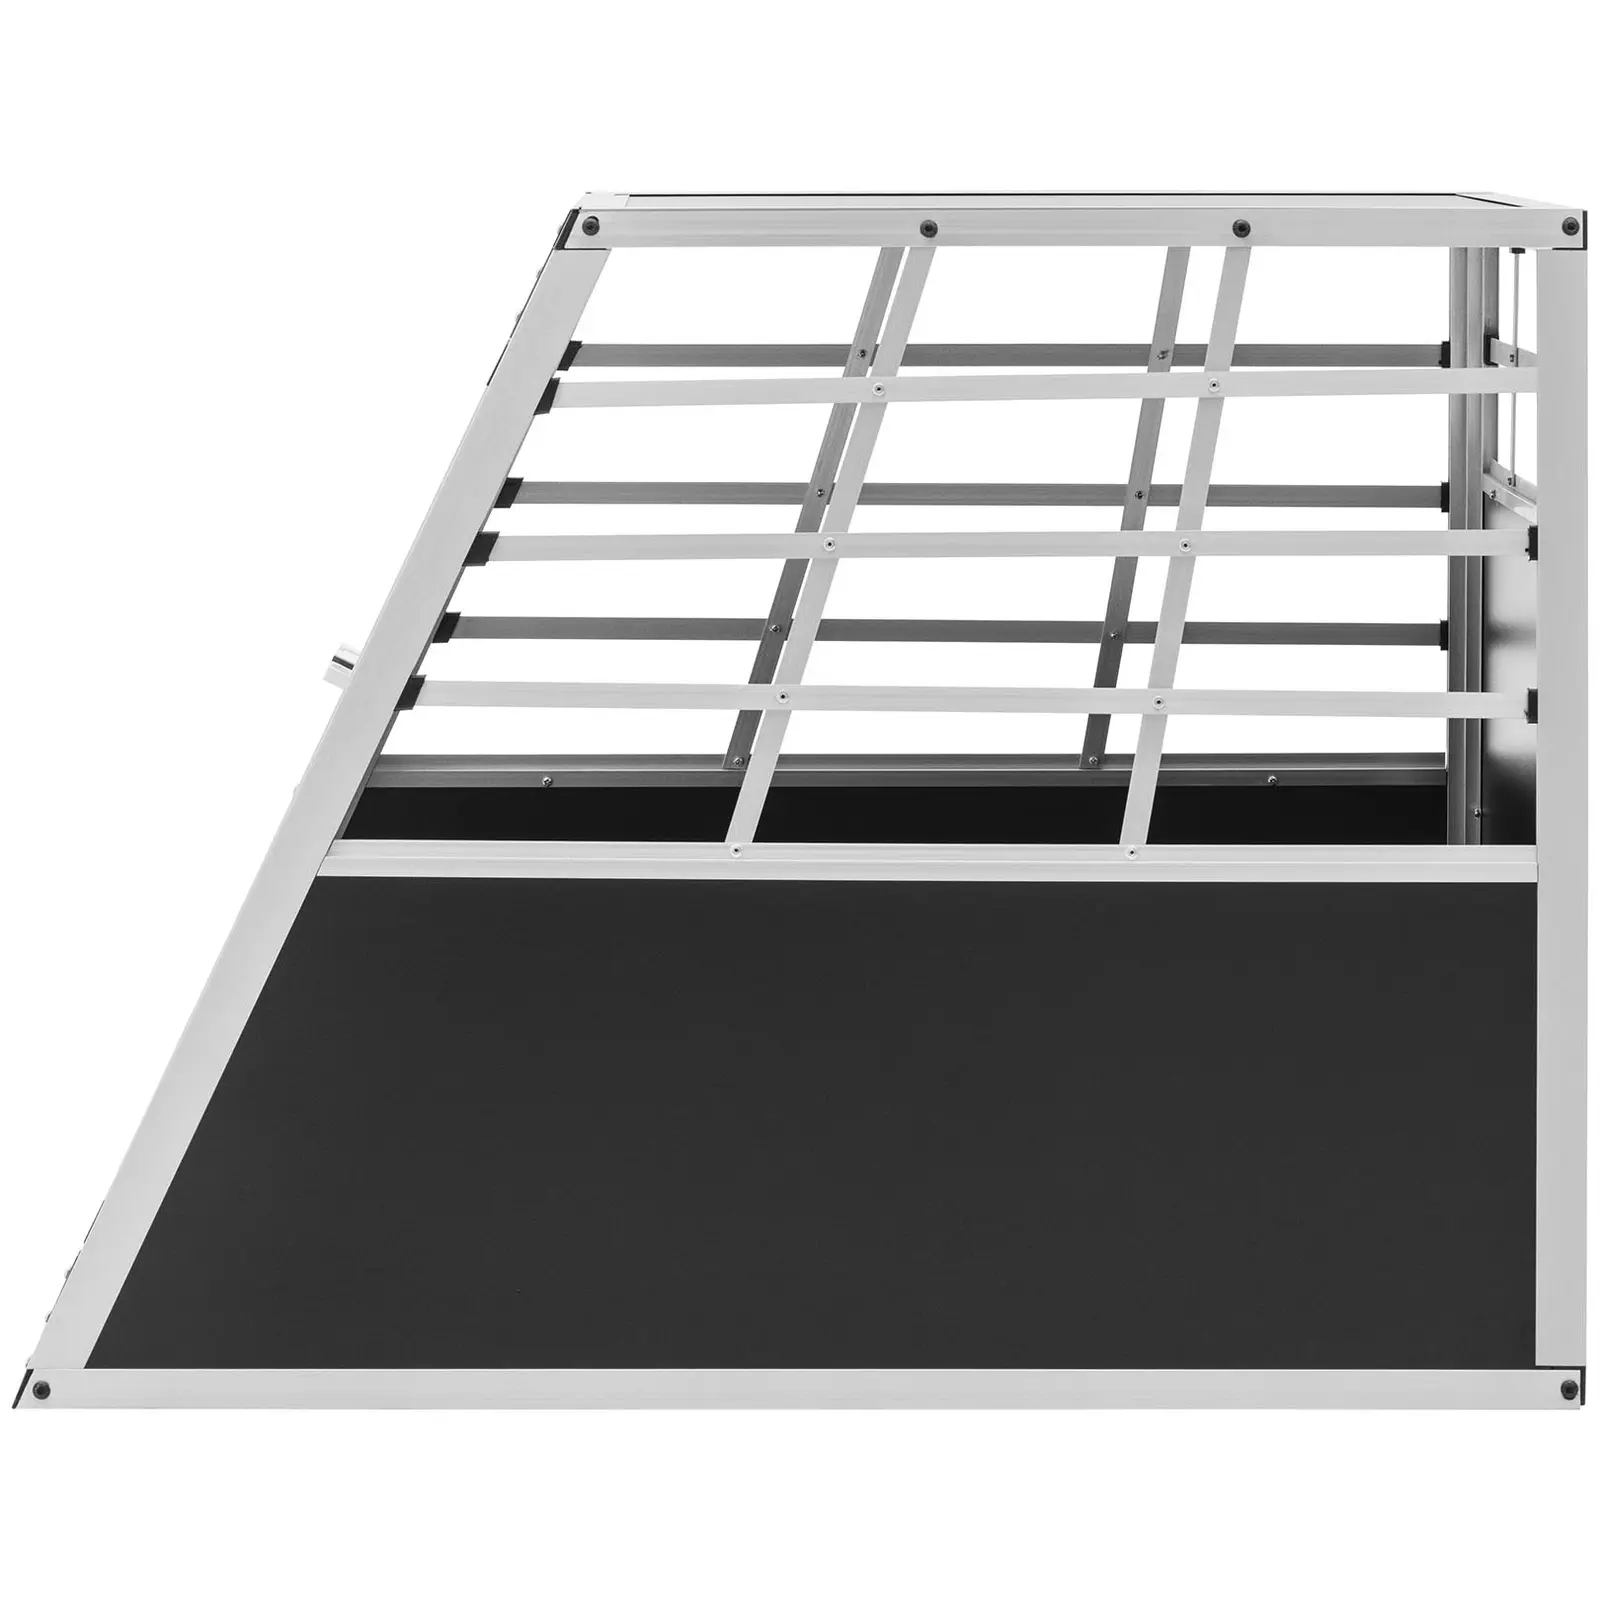 Hundebur - aluminium - trapesformet - 91 x 65 x 70 cm